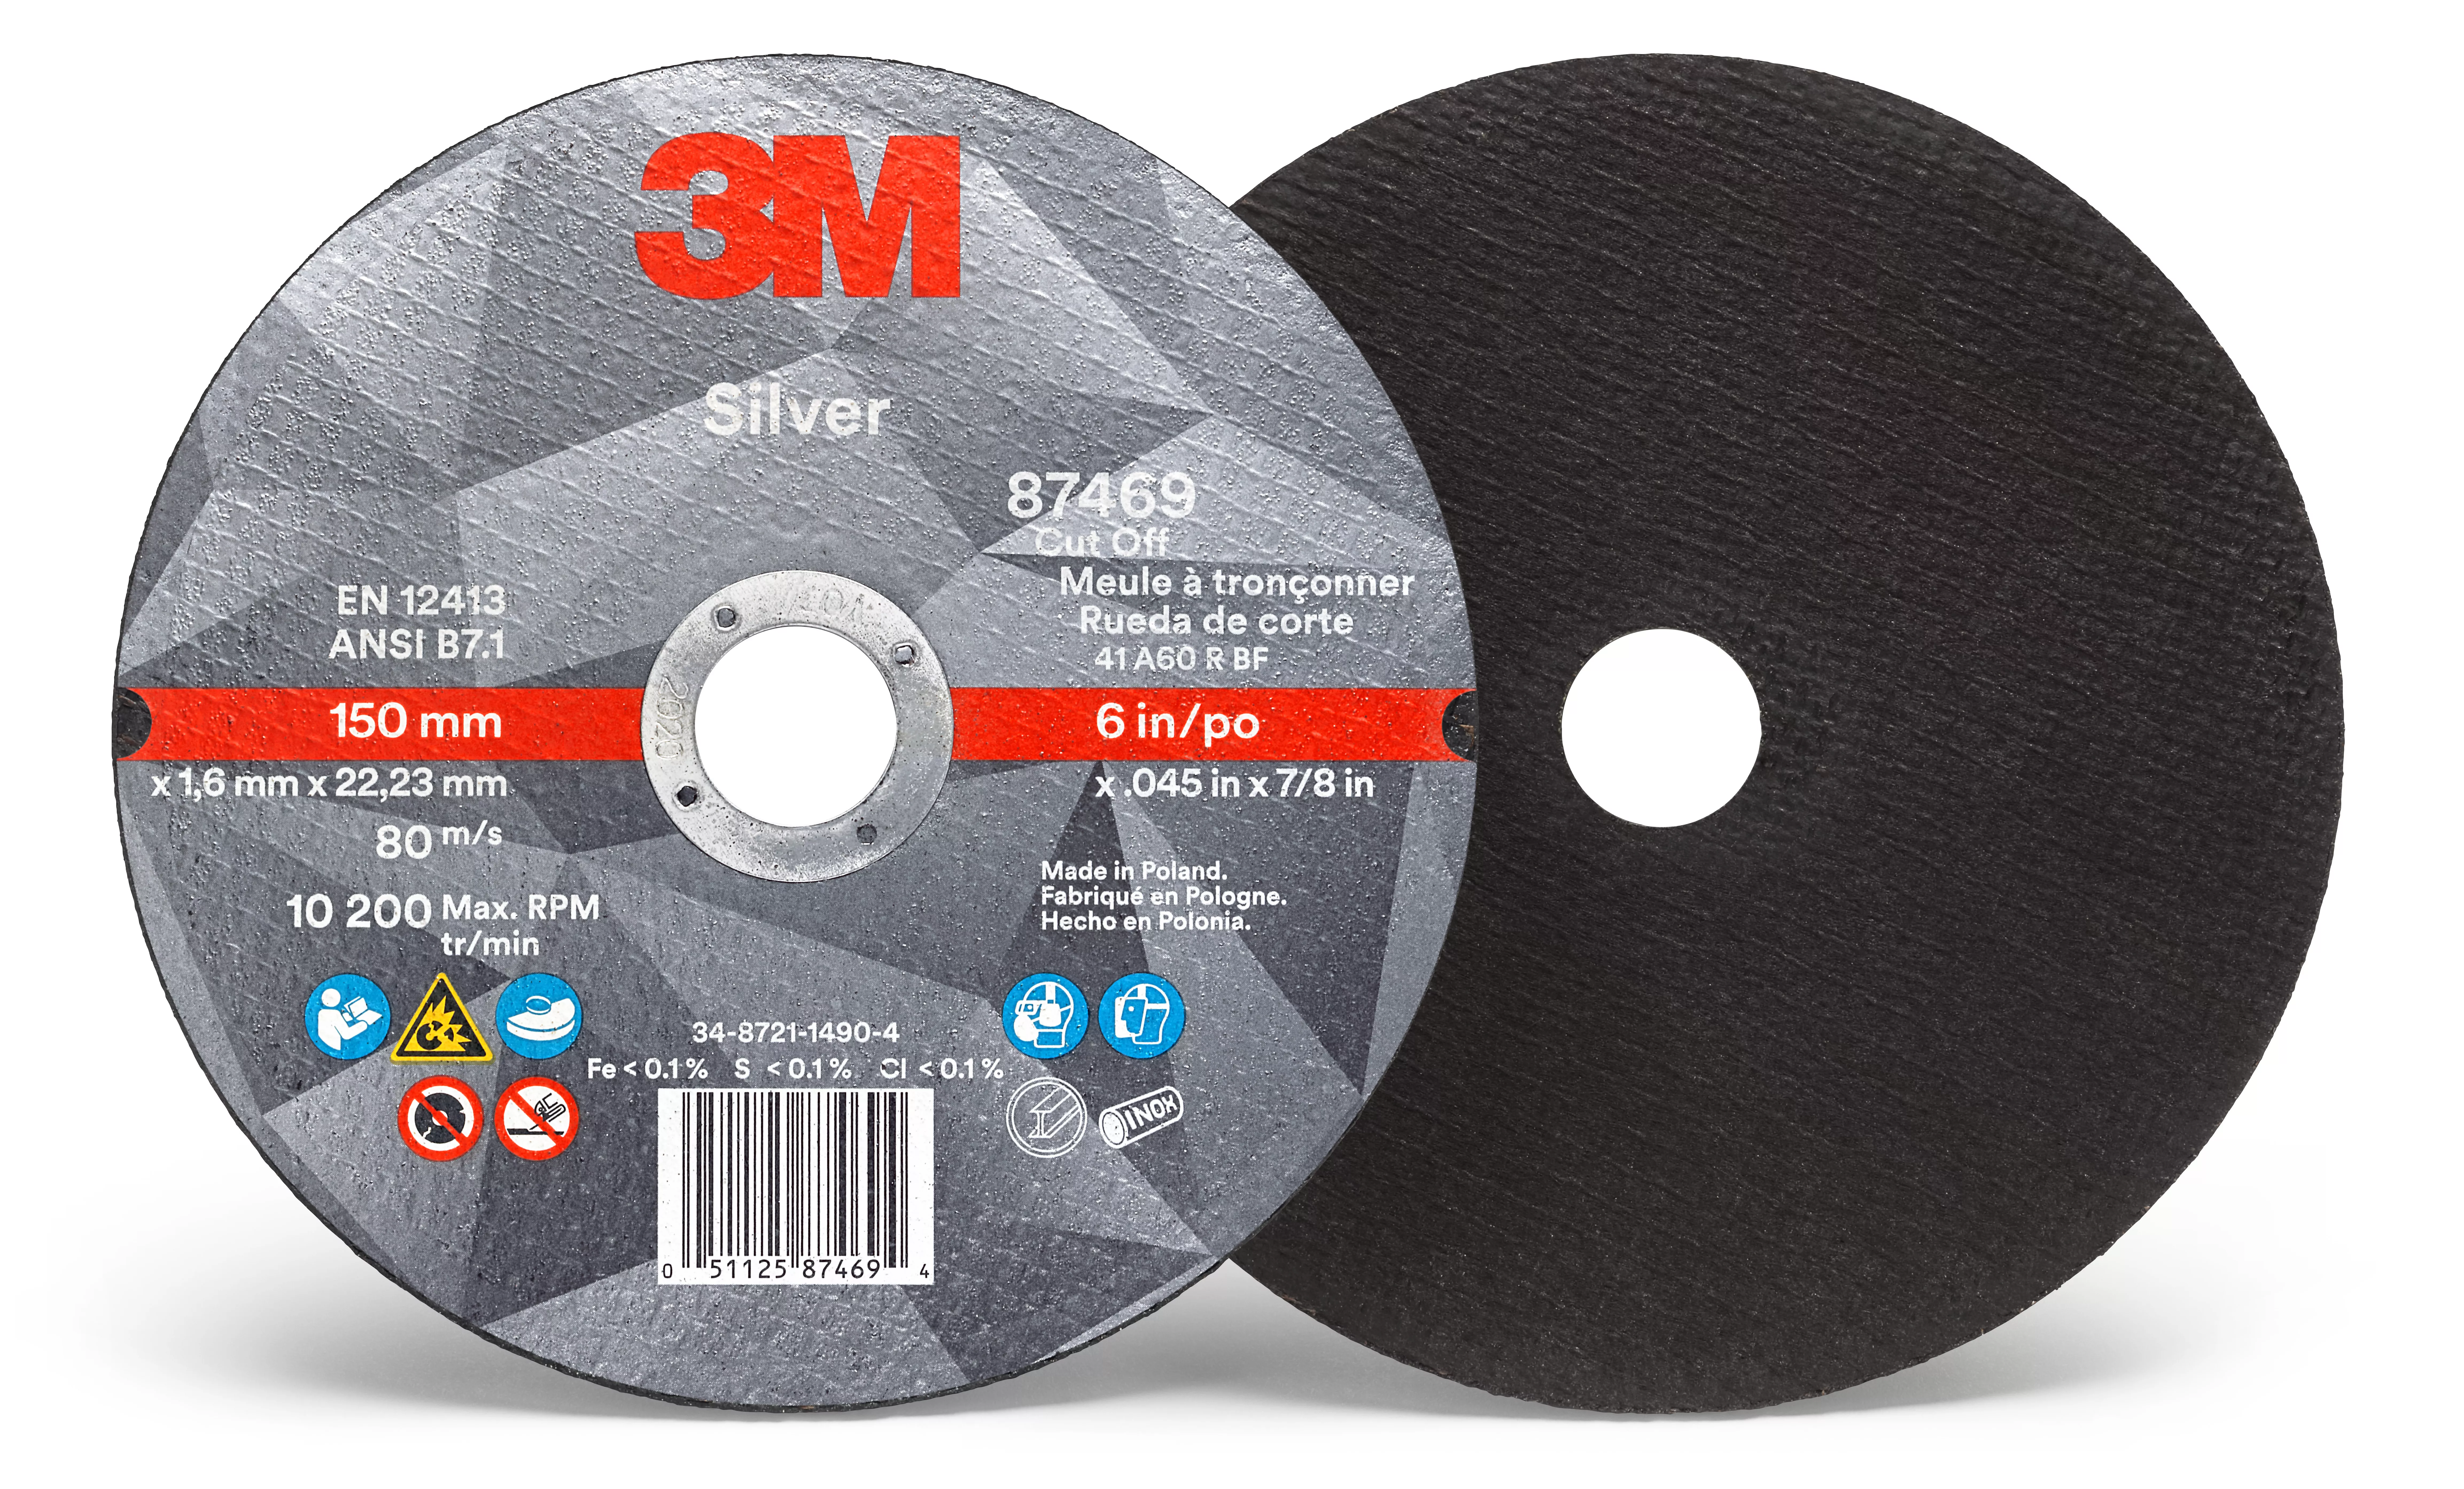 3M™ Silver Cut-Off Wheel, 87469, T1, 6 in x .045 in x 7/8 in, 25/Carton,
50 ea/Case